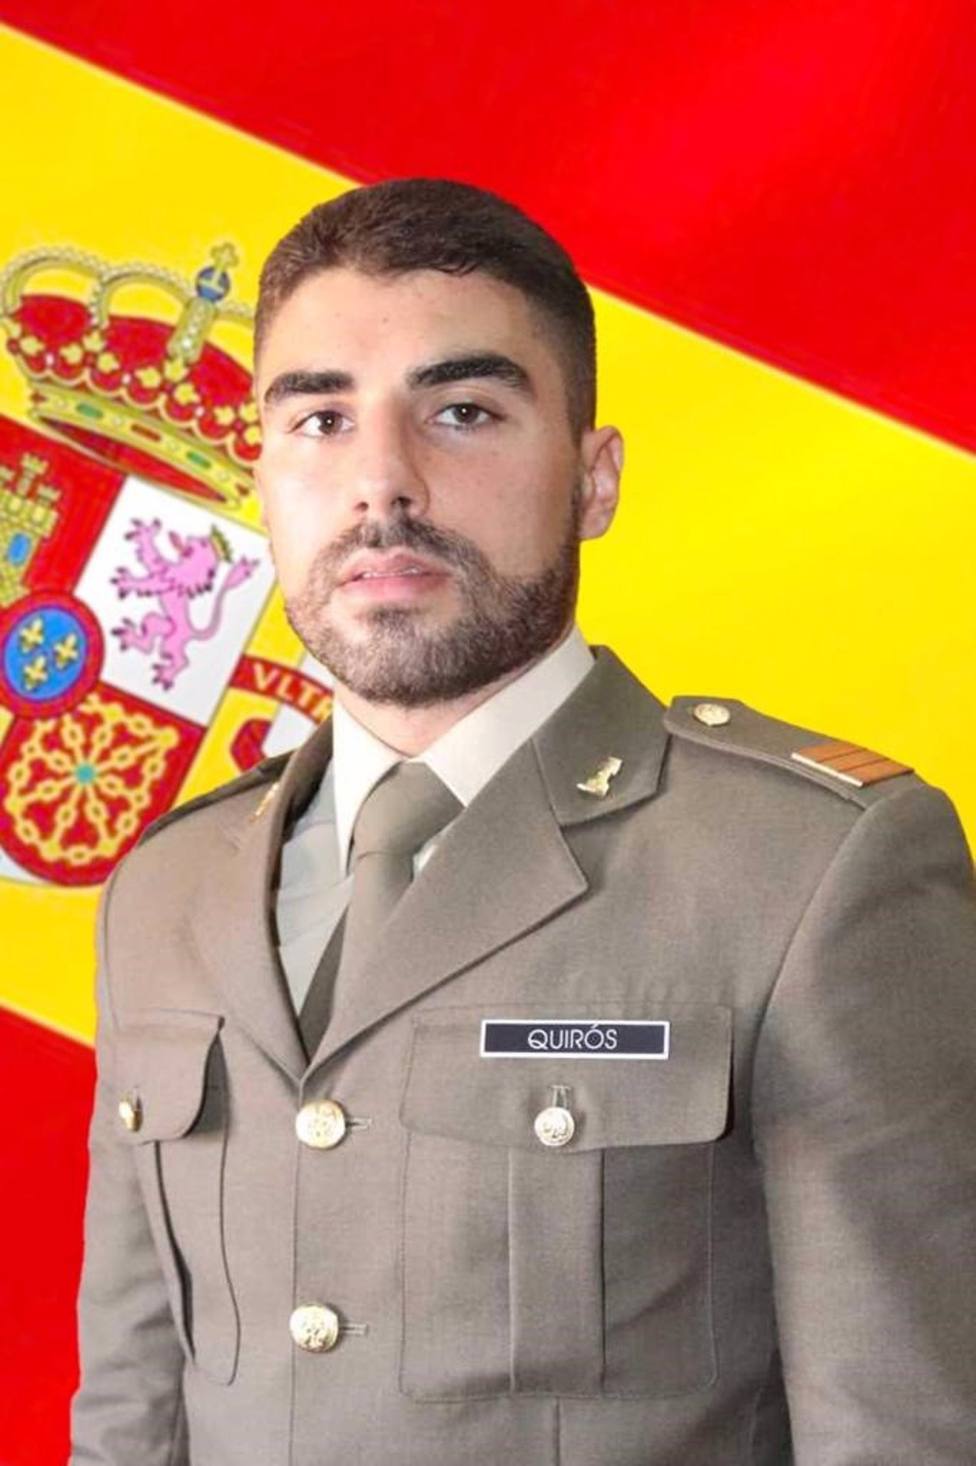 El Ejército confirma la muerte del sargento malagueño desaparecido en un pantano de Huesca